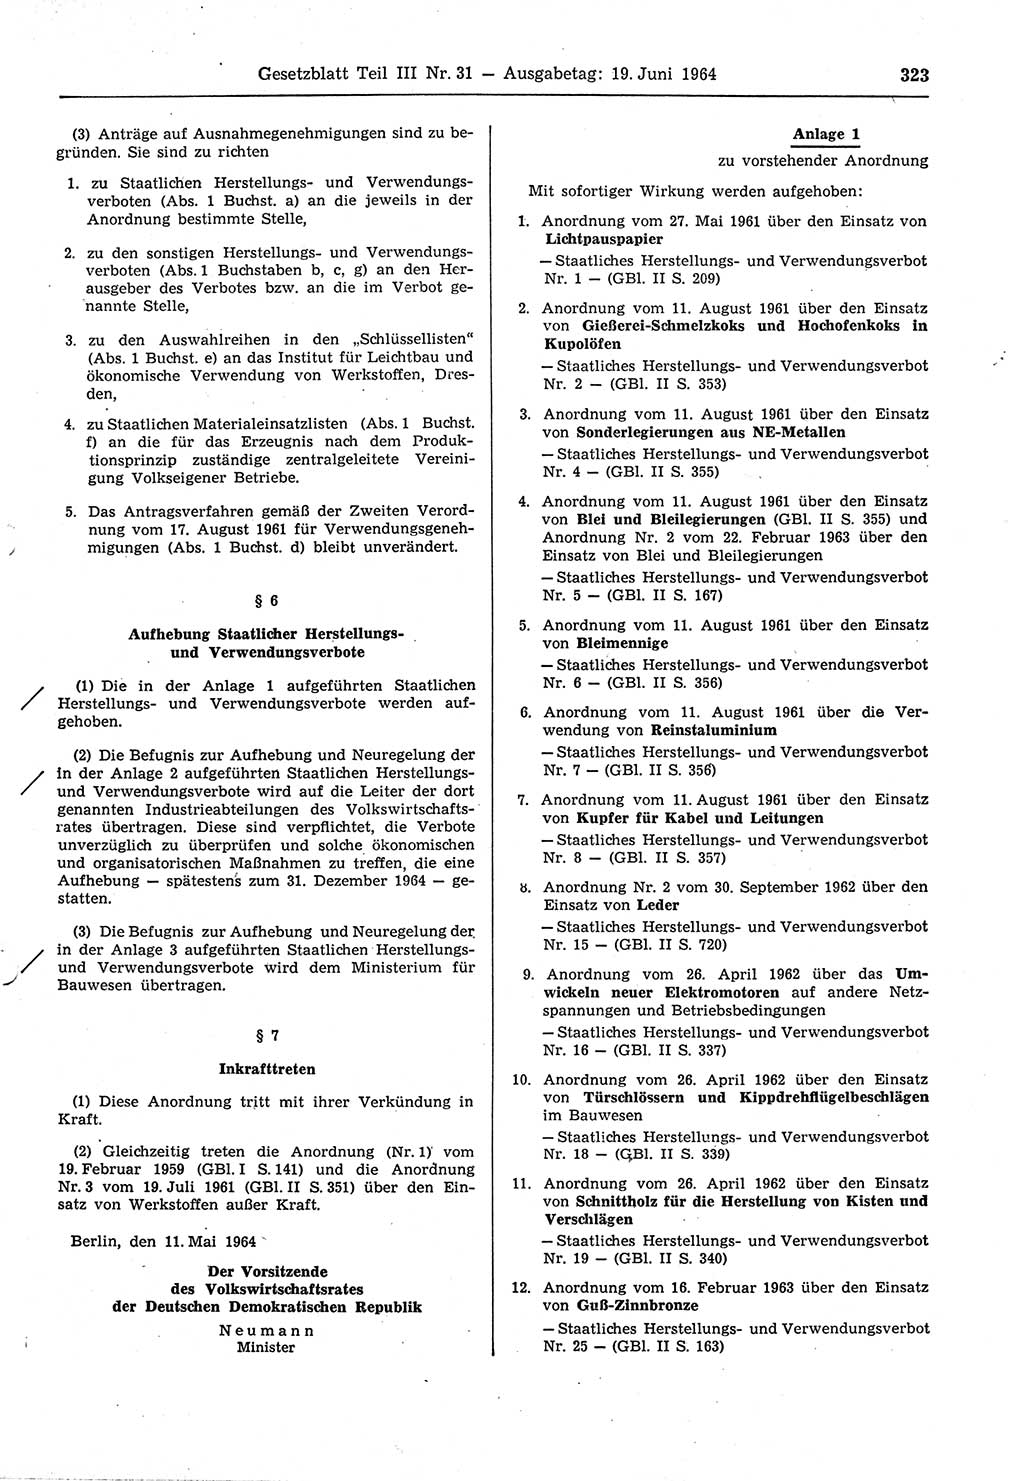 Gesetzblatt (GBl.) der Deutschen Demokratischen Republik (DDR) Teil ⅠⅠⅠ 1964, Seite 323 (GBl. DDR ⅠⅠⅠ 1964, S. 323)